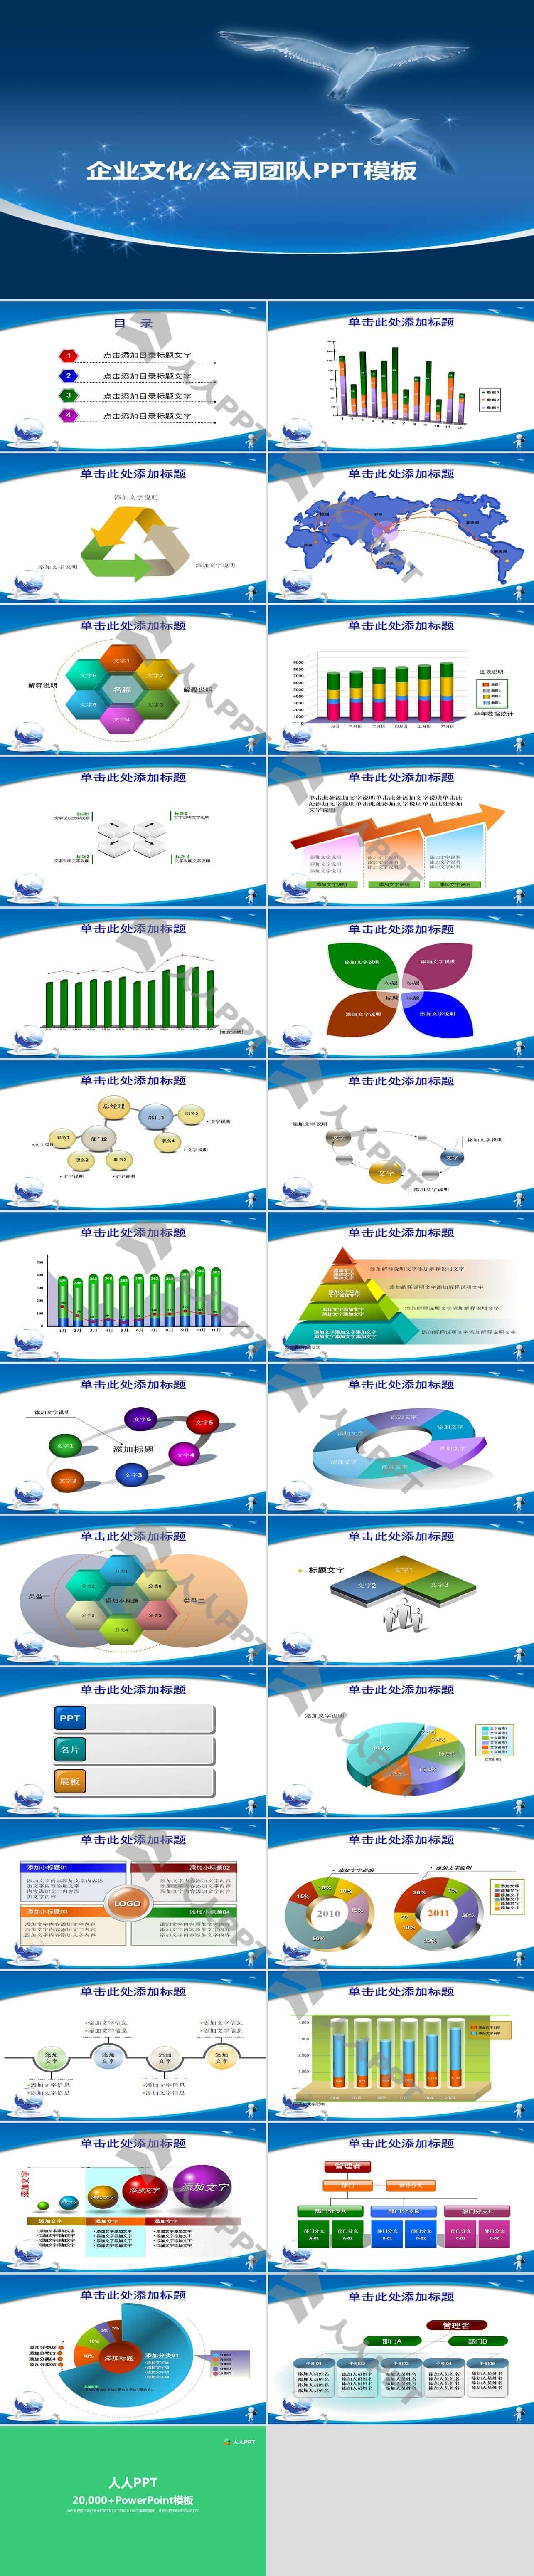 扁平化与水墨风完美结合――声效中国风PPT模板长图